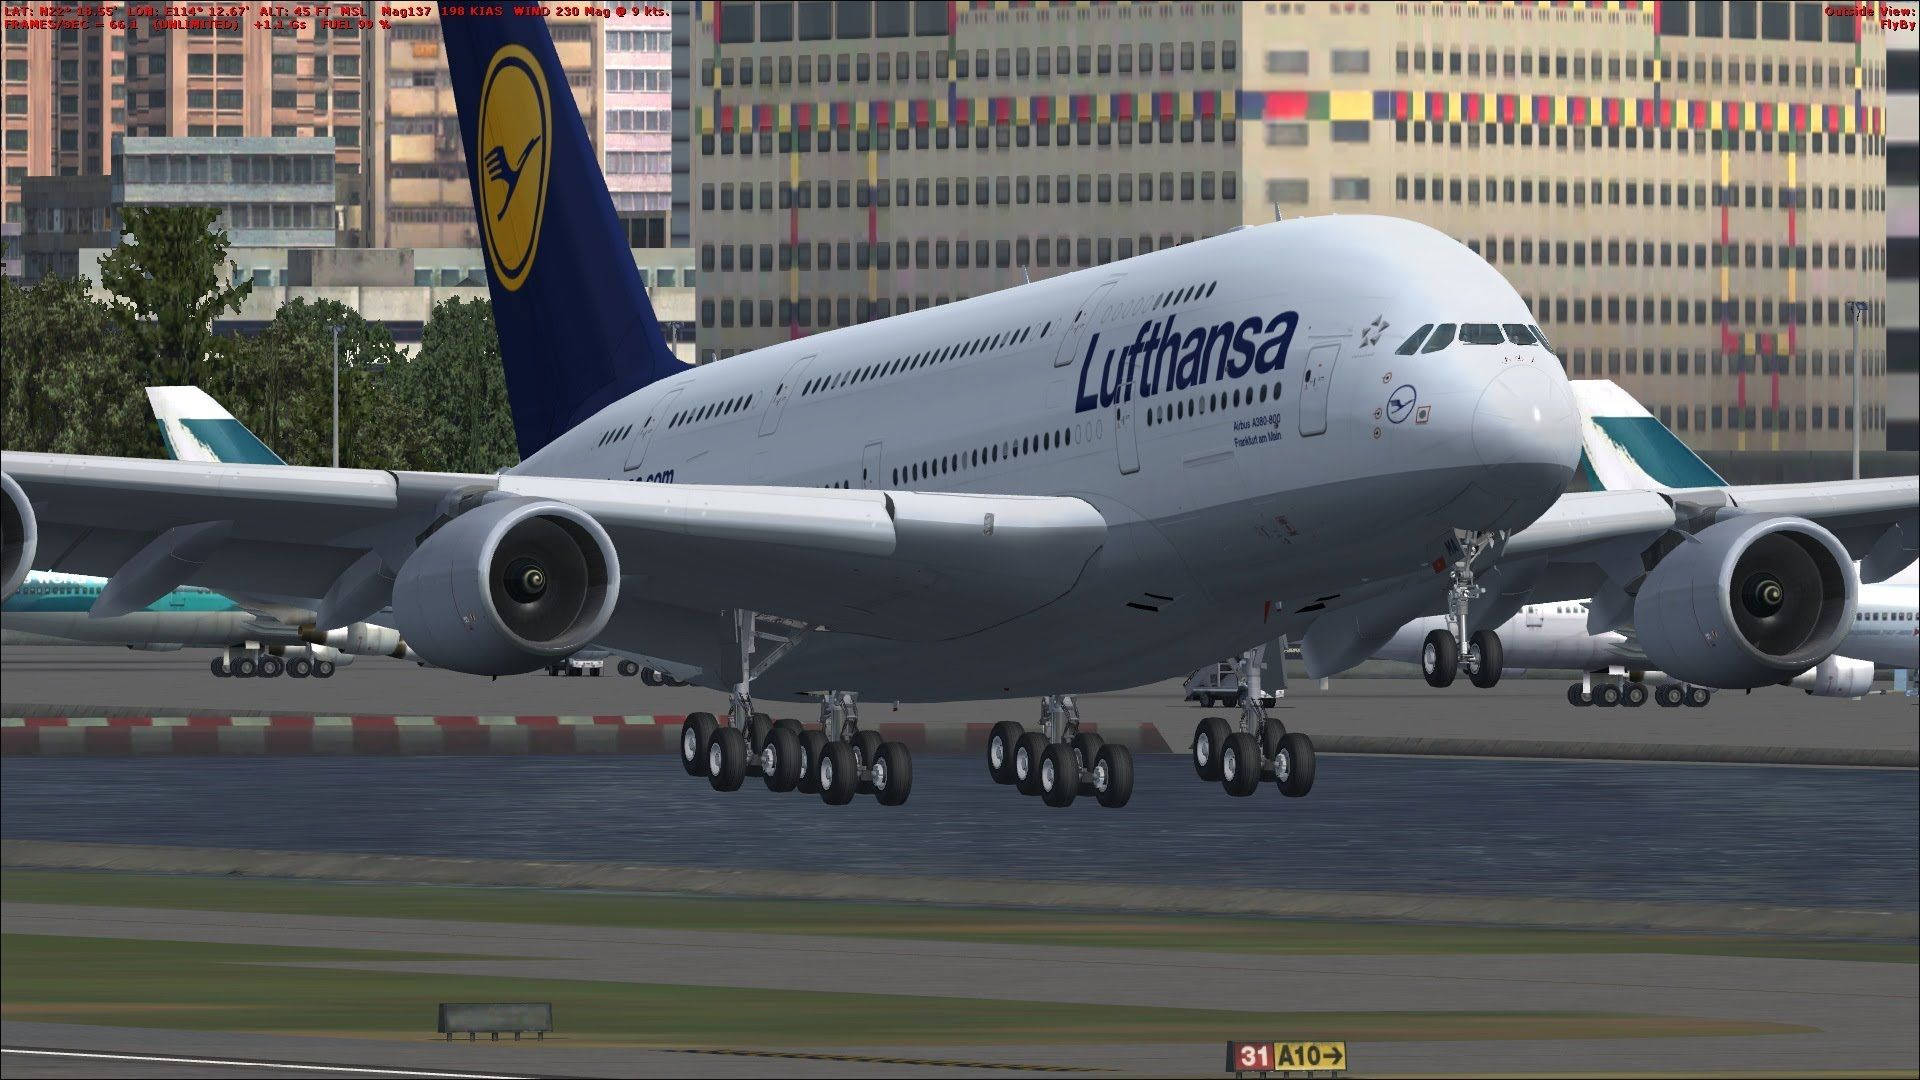 Deutsche Lufthansa Plane Ready To Fly Picture